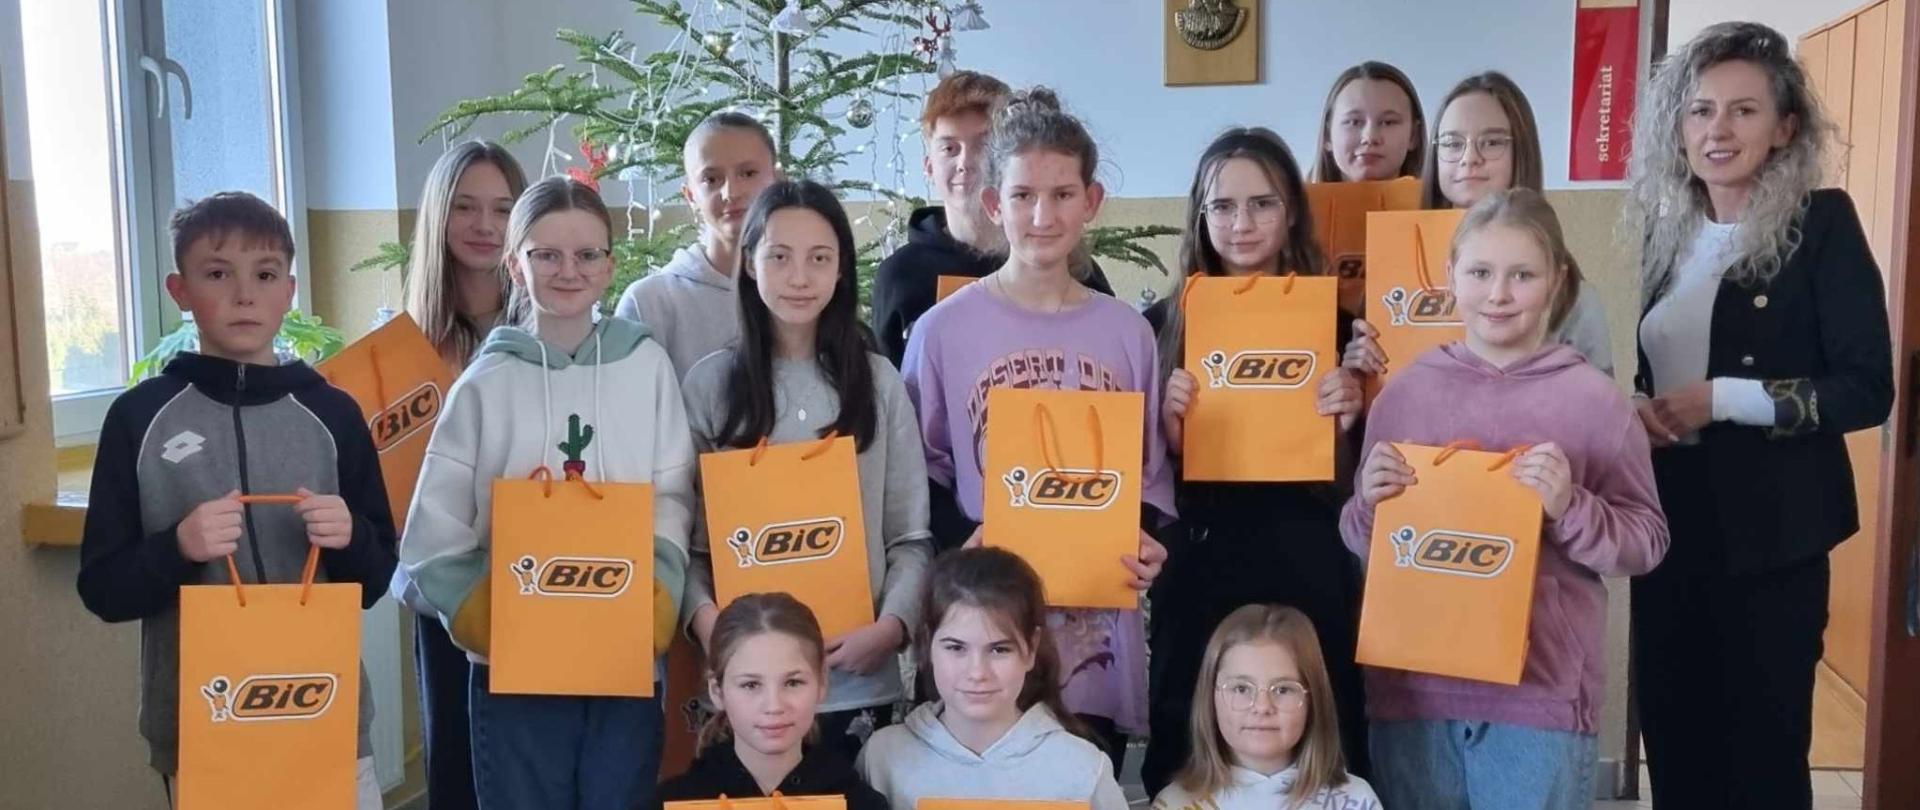 Uczniowie wraz z Panią Dyrektor trzymają w rękach pomarańczowe Torebki z napisem "BIC", w których znajdują się nagrody otrzymane w konkursie "Co dodaje mi skrzydeł".